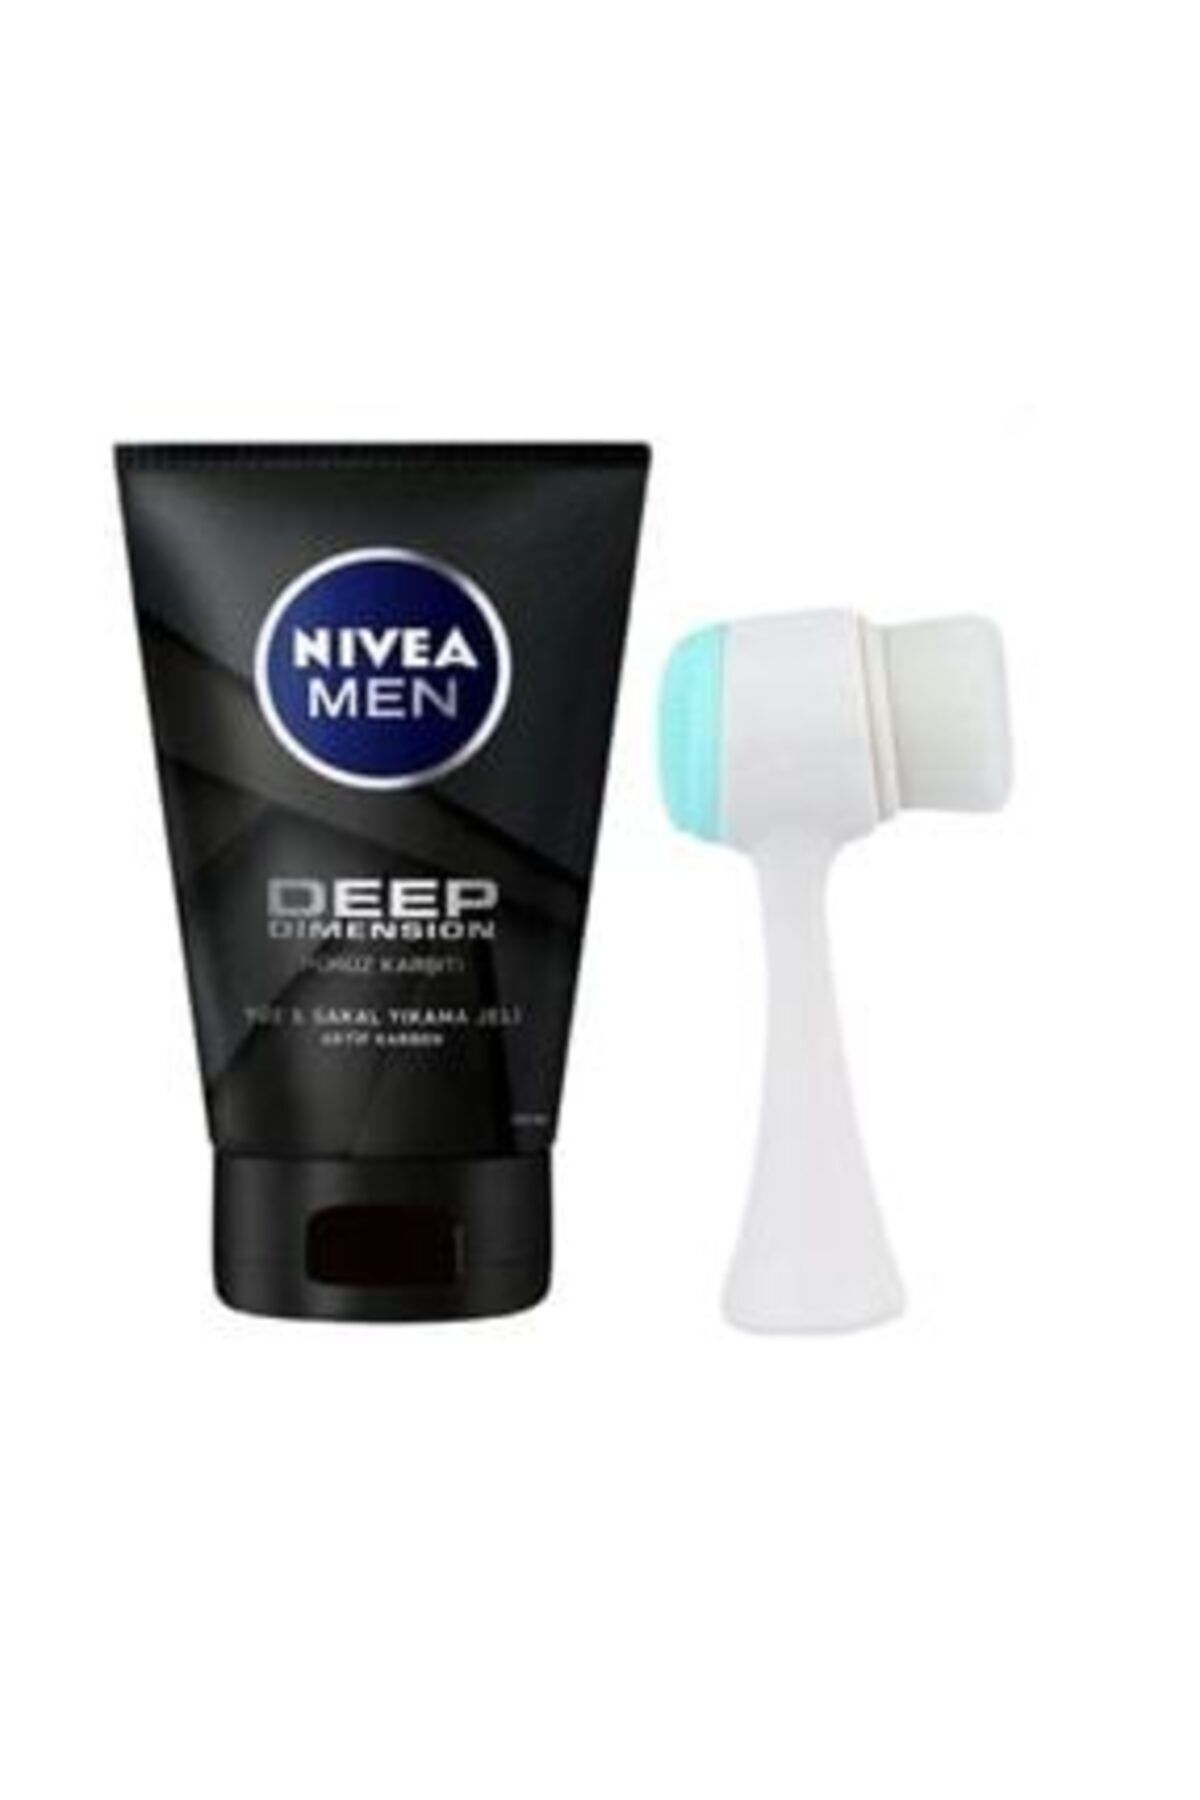 NIVEA Men Deep Dimension Yüz Ve Sakal Temizleme Jeli 100 ml + Yüz Temizleme Fırçası